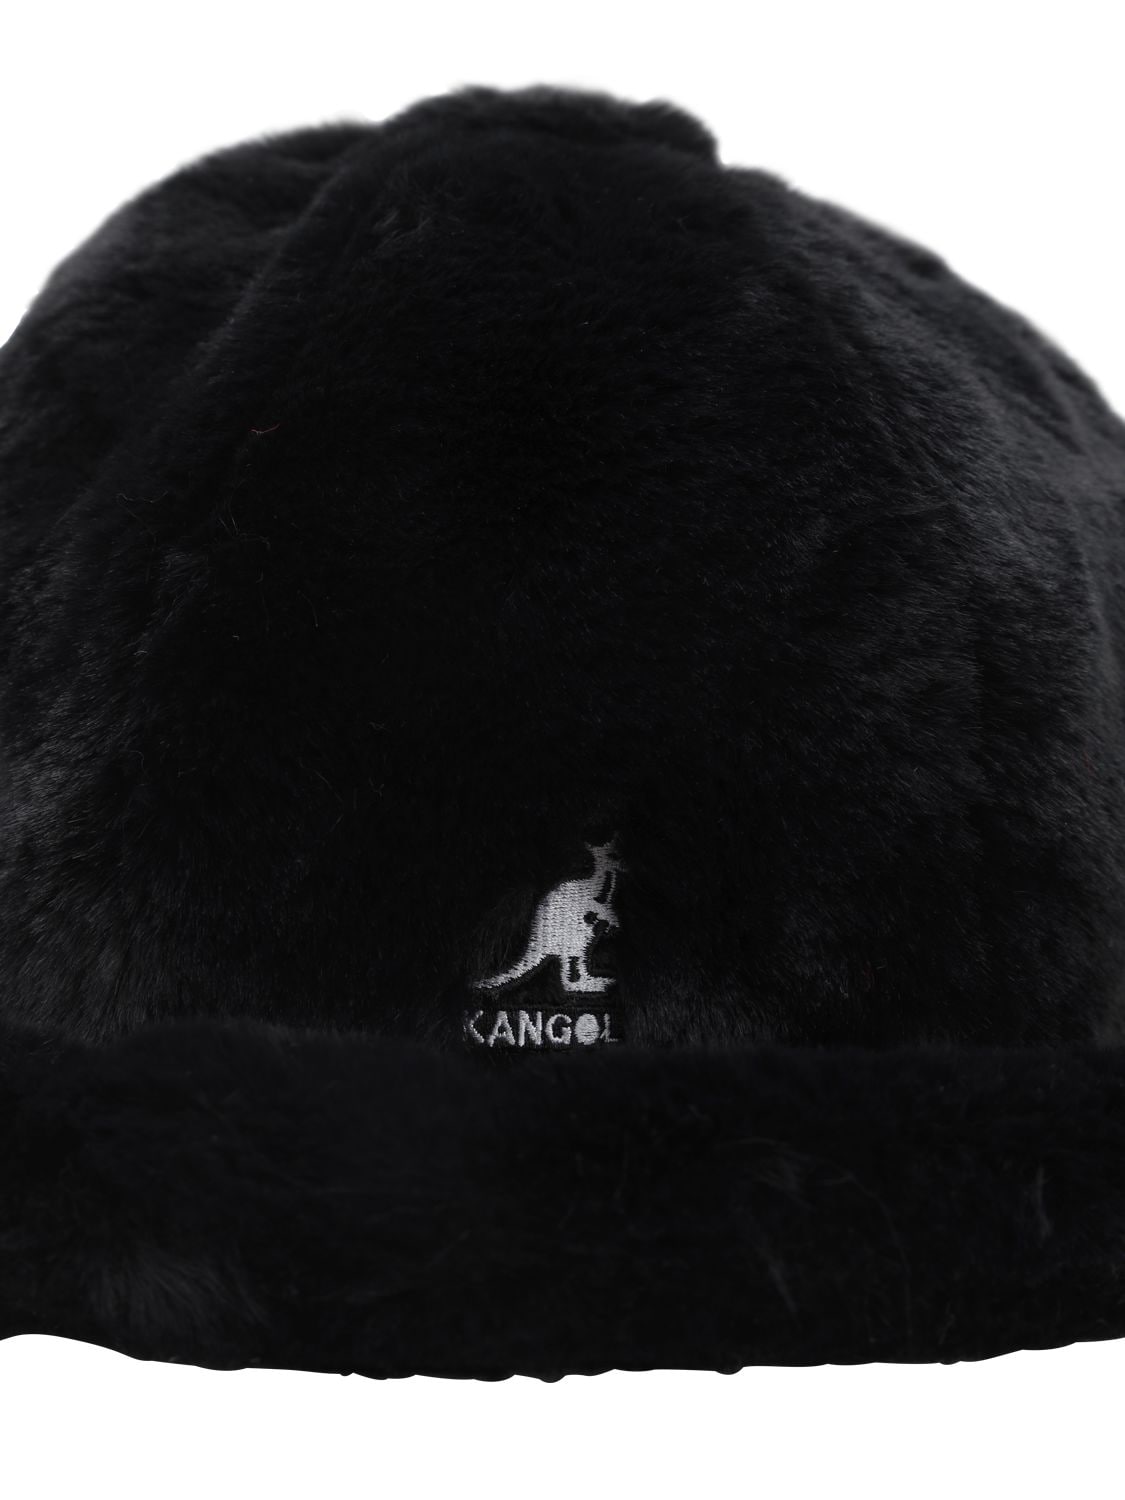 Kangol Faux Fur Bucket Hat In Black | ModeSens